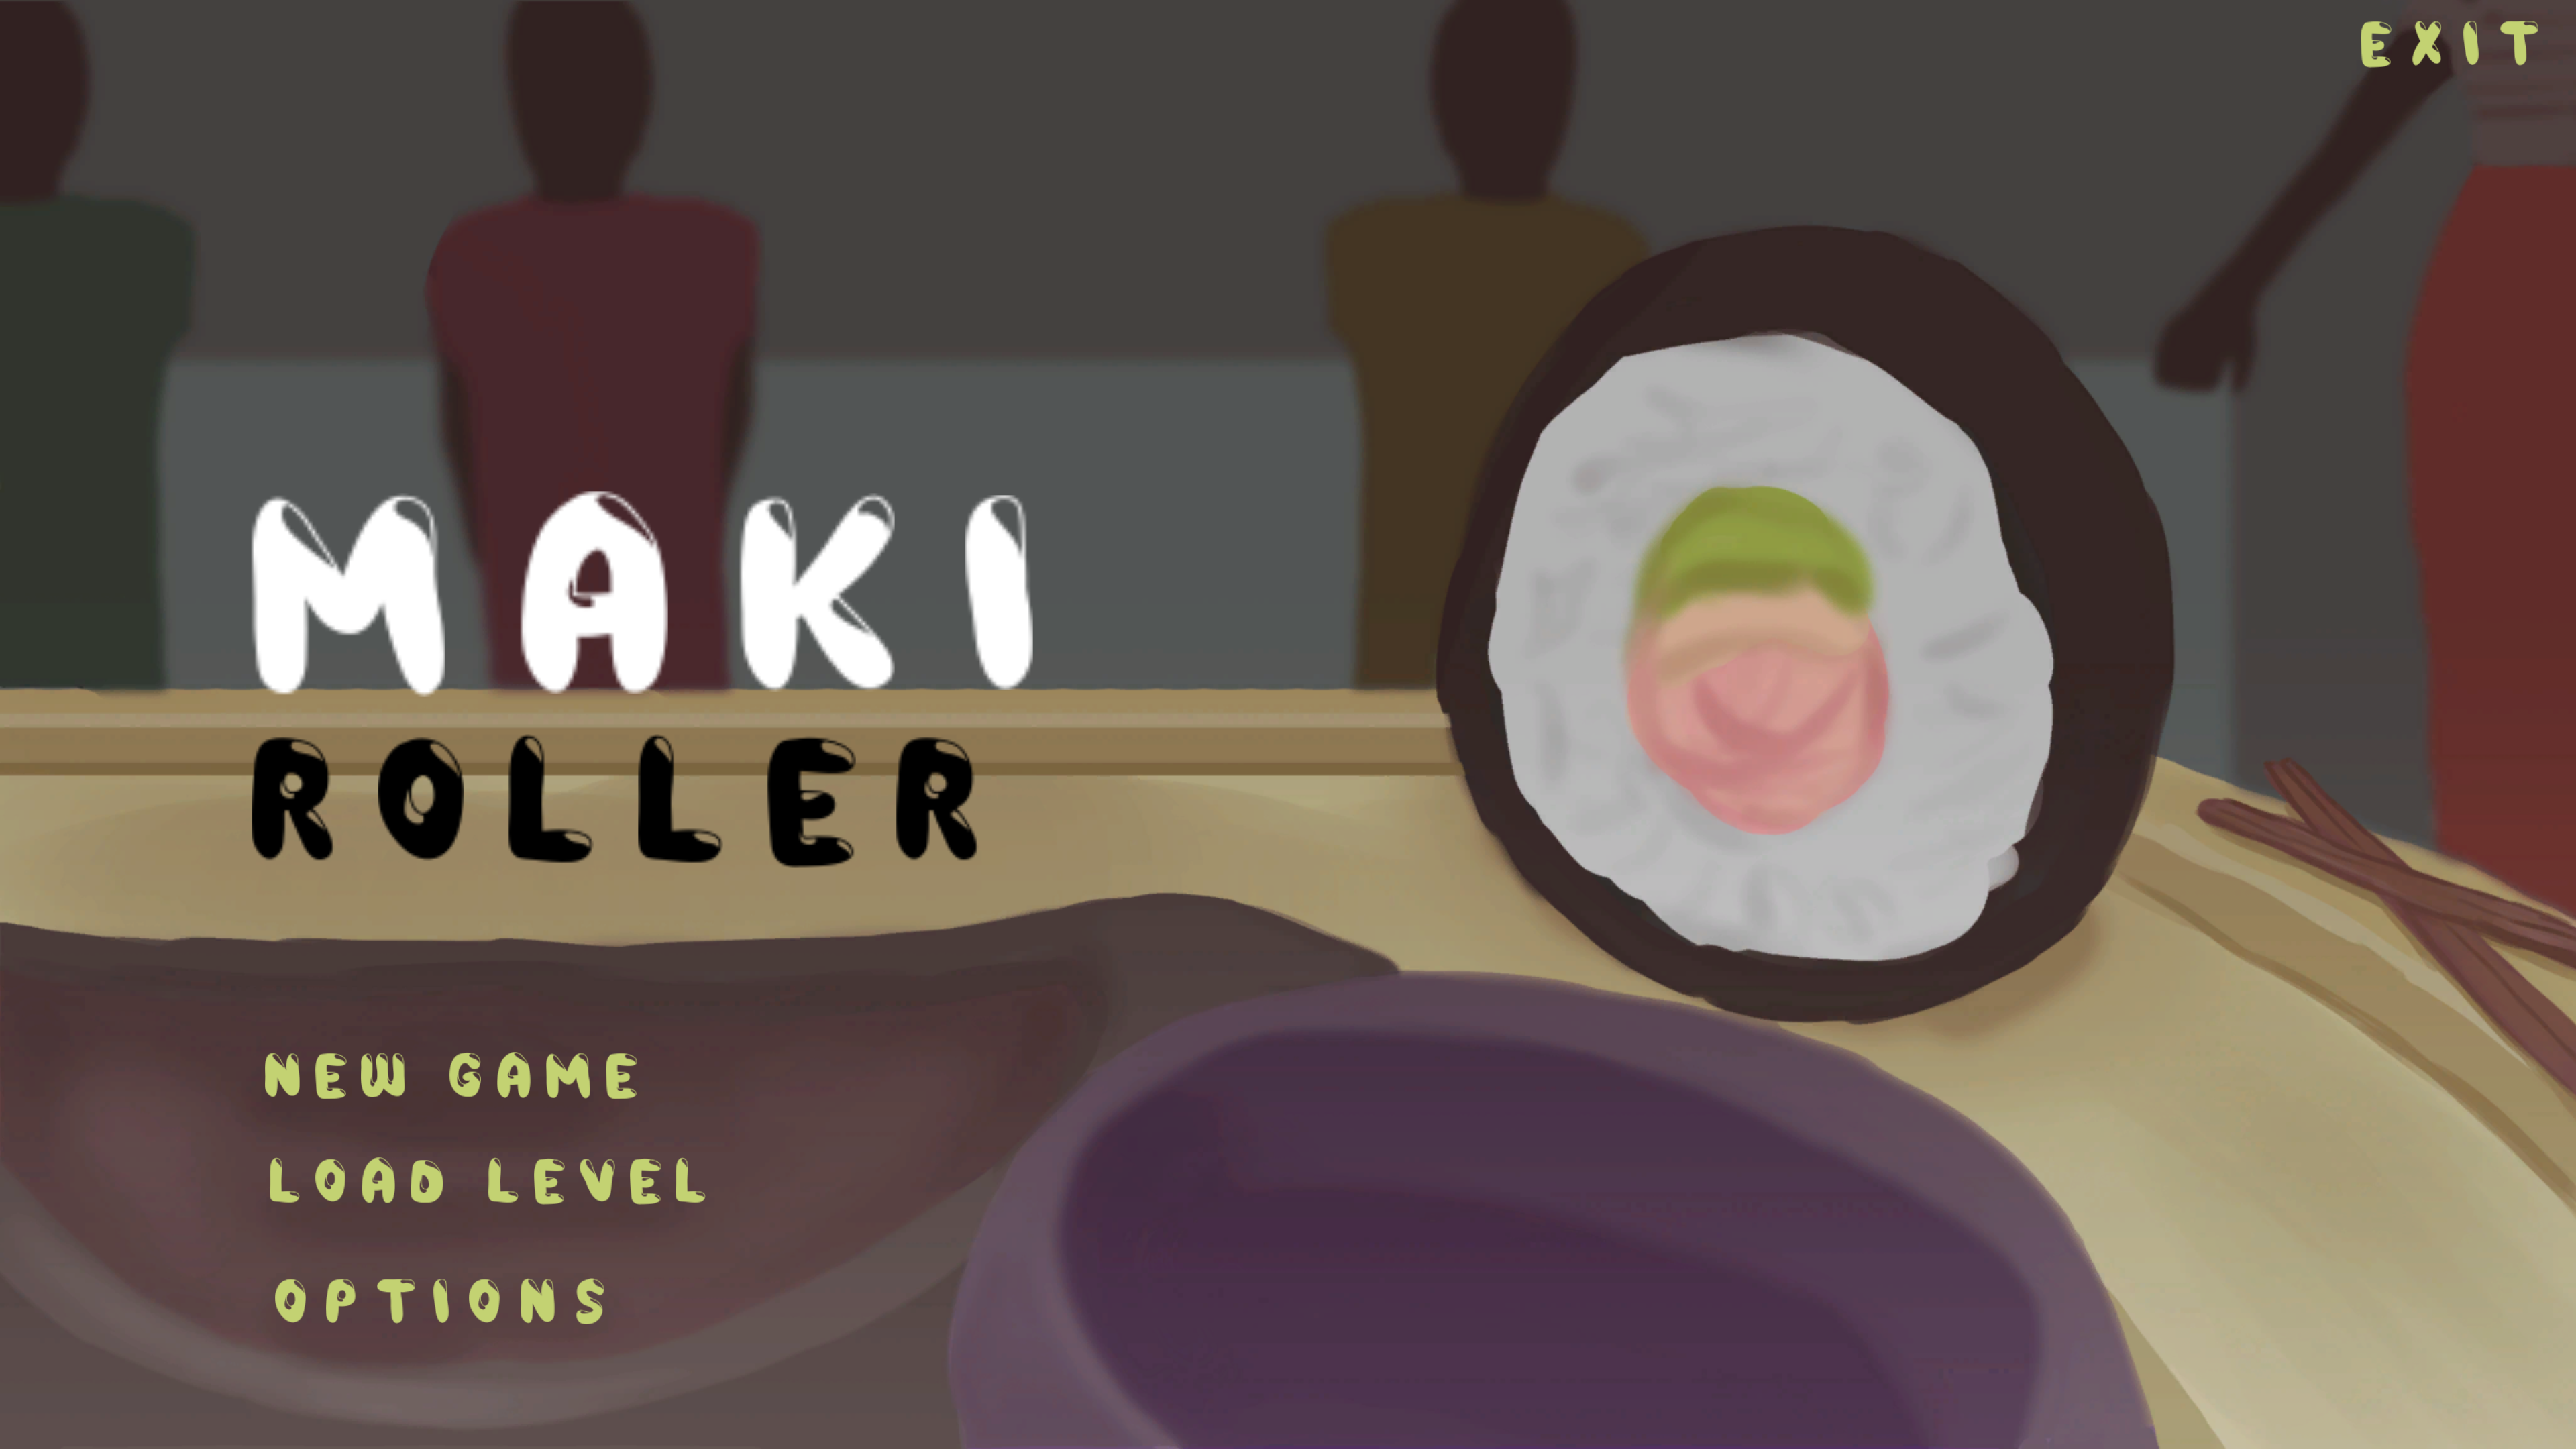 Maki Roller